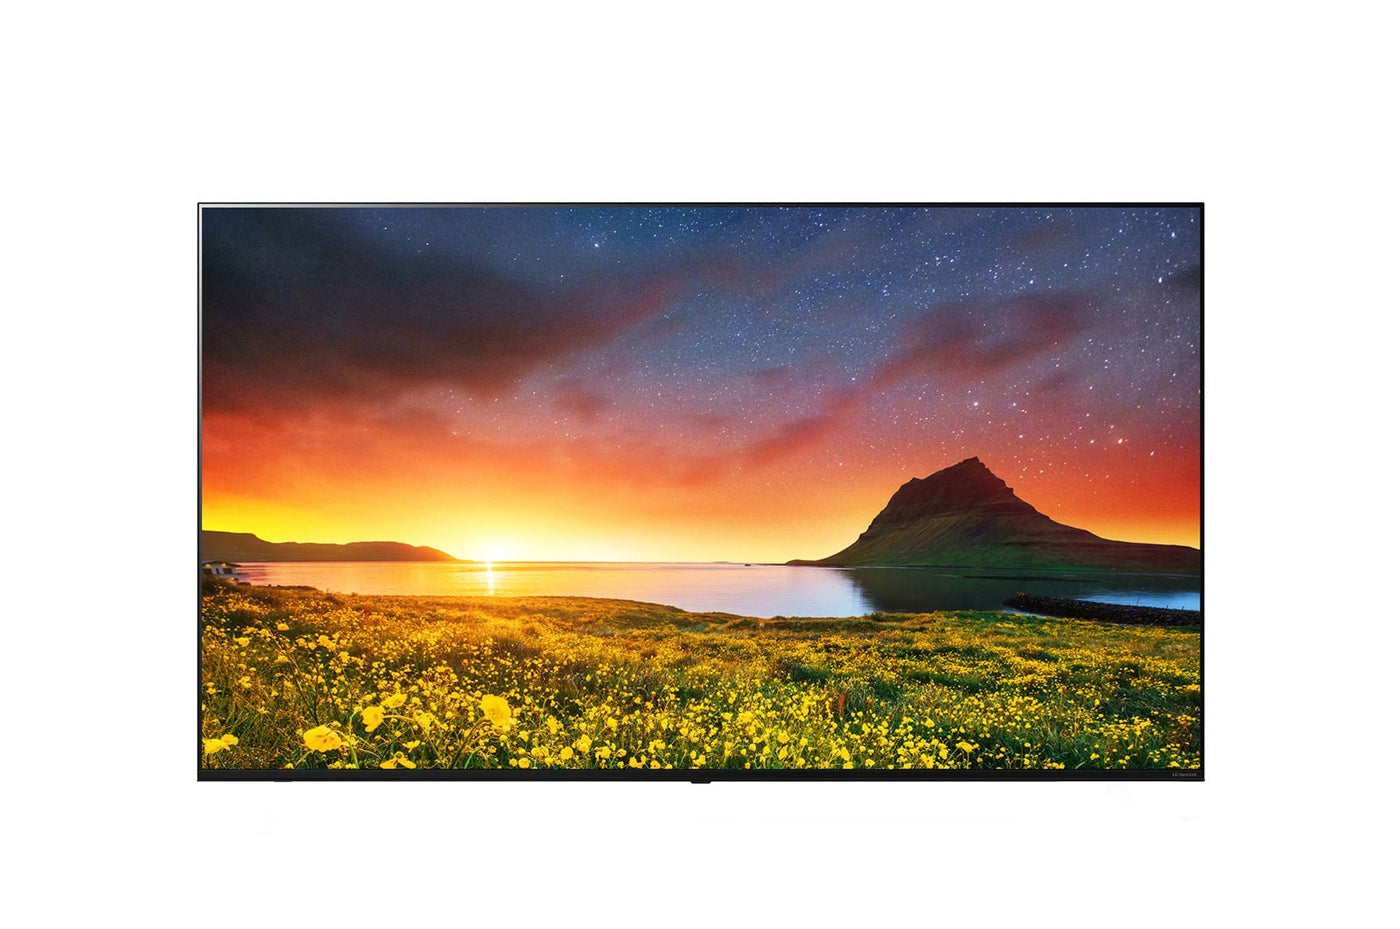 LG 55 NANOCELL 4K UHD HDR SMART TV